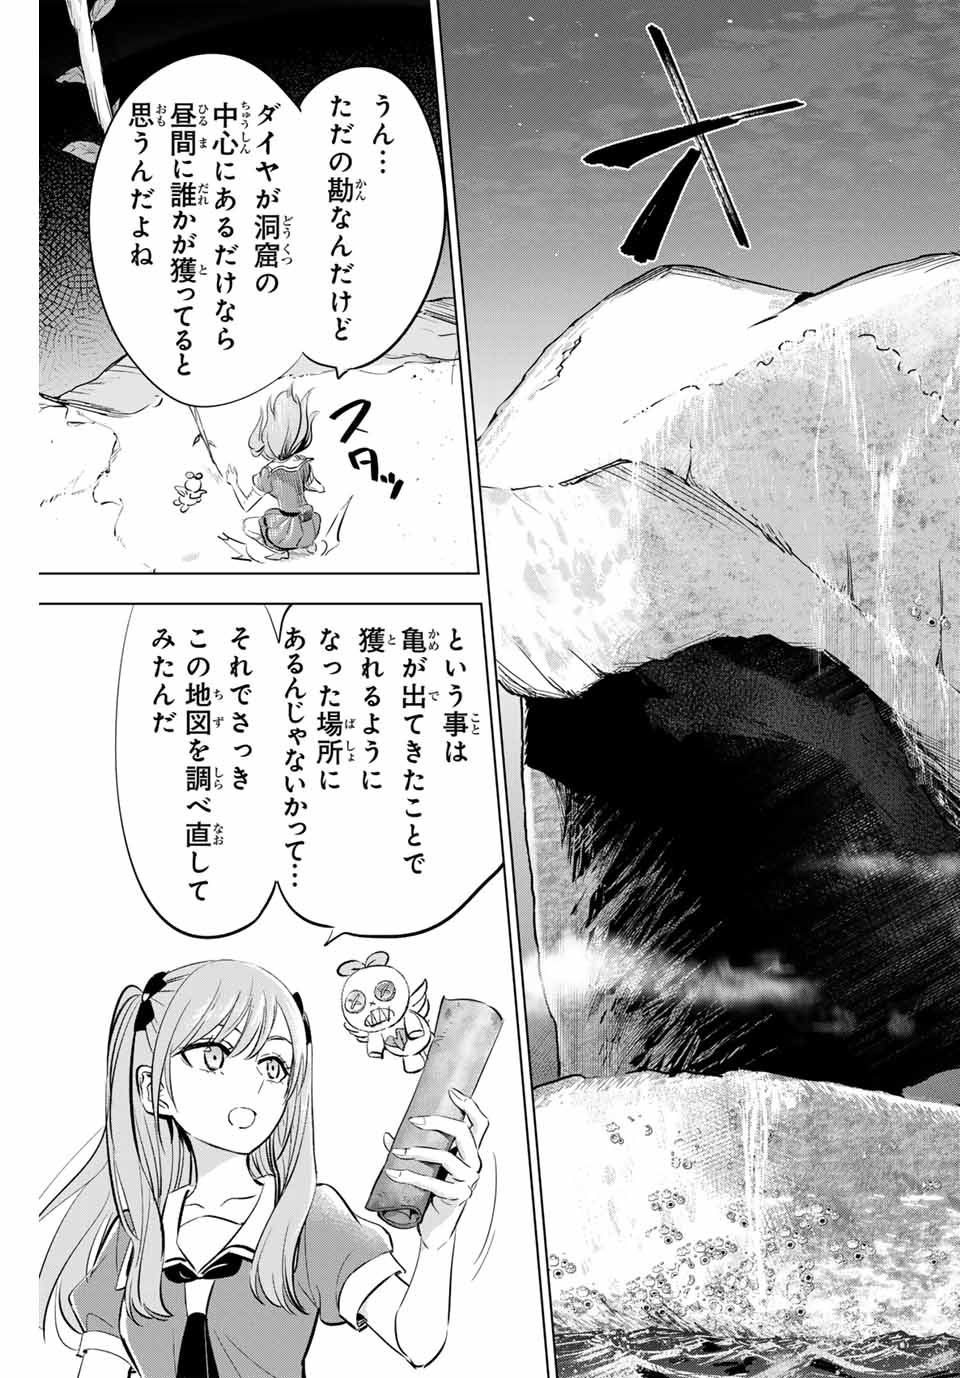 Kuroneko to Majo no Kyoushitsu - Chapter 52 - Page 23